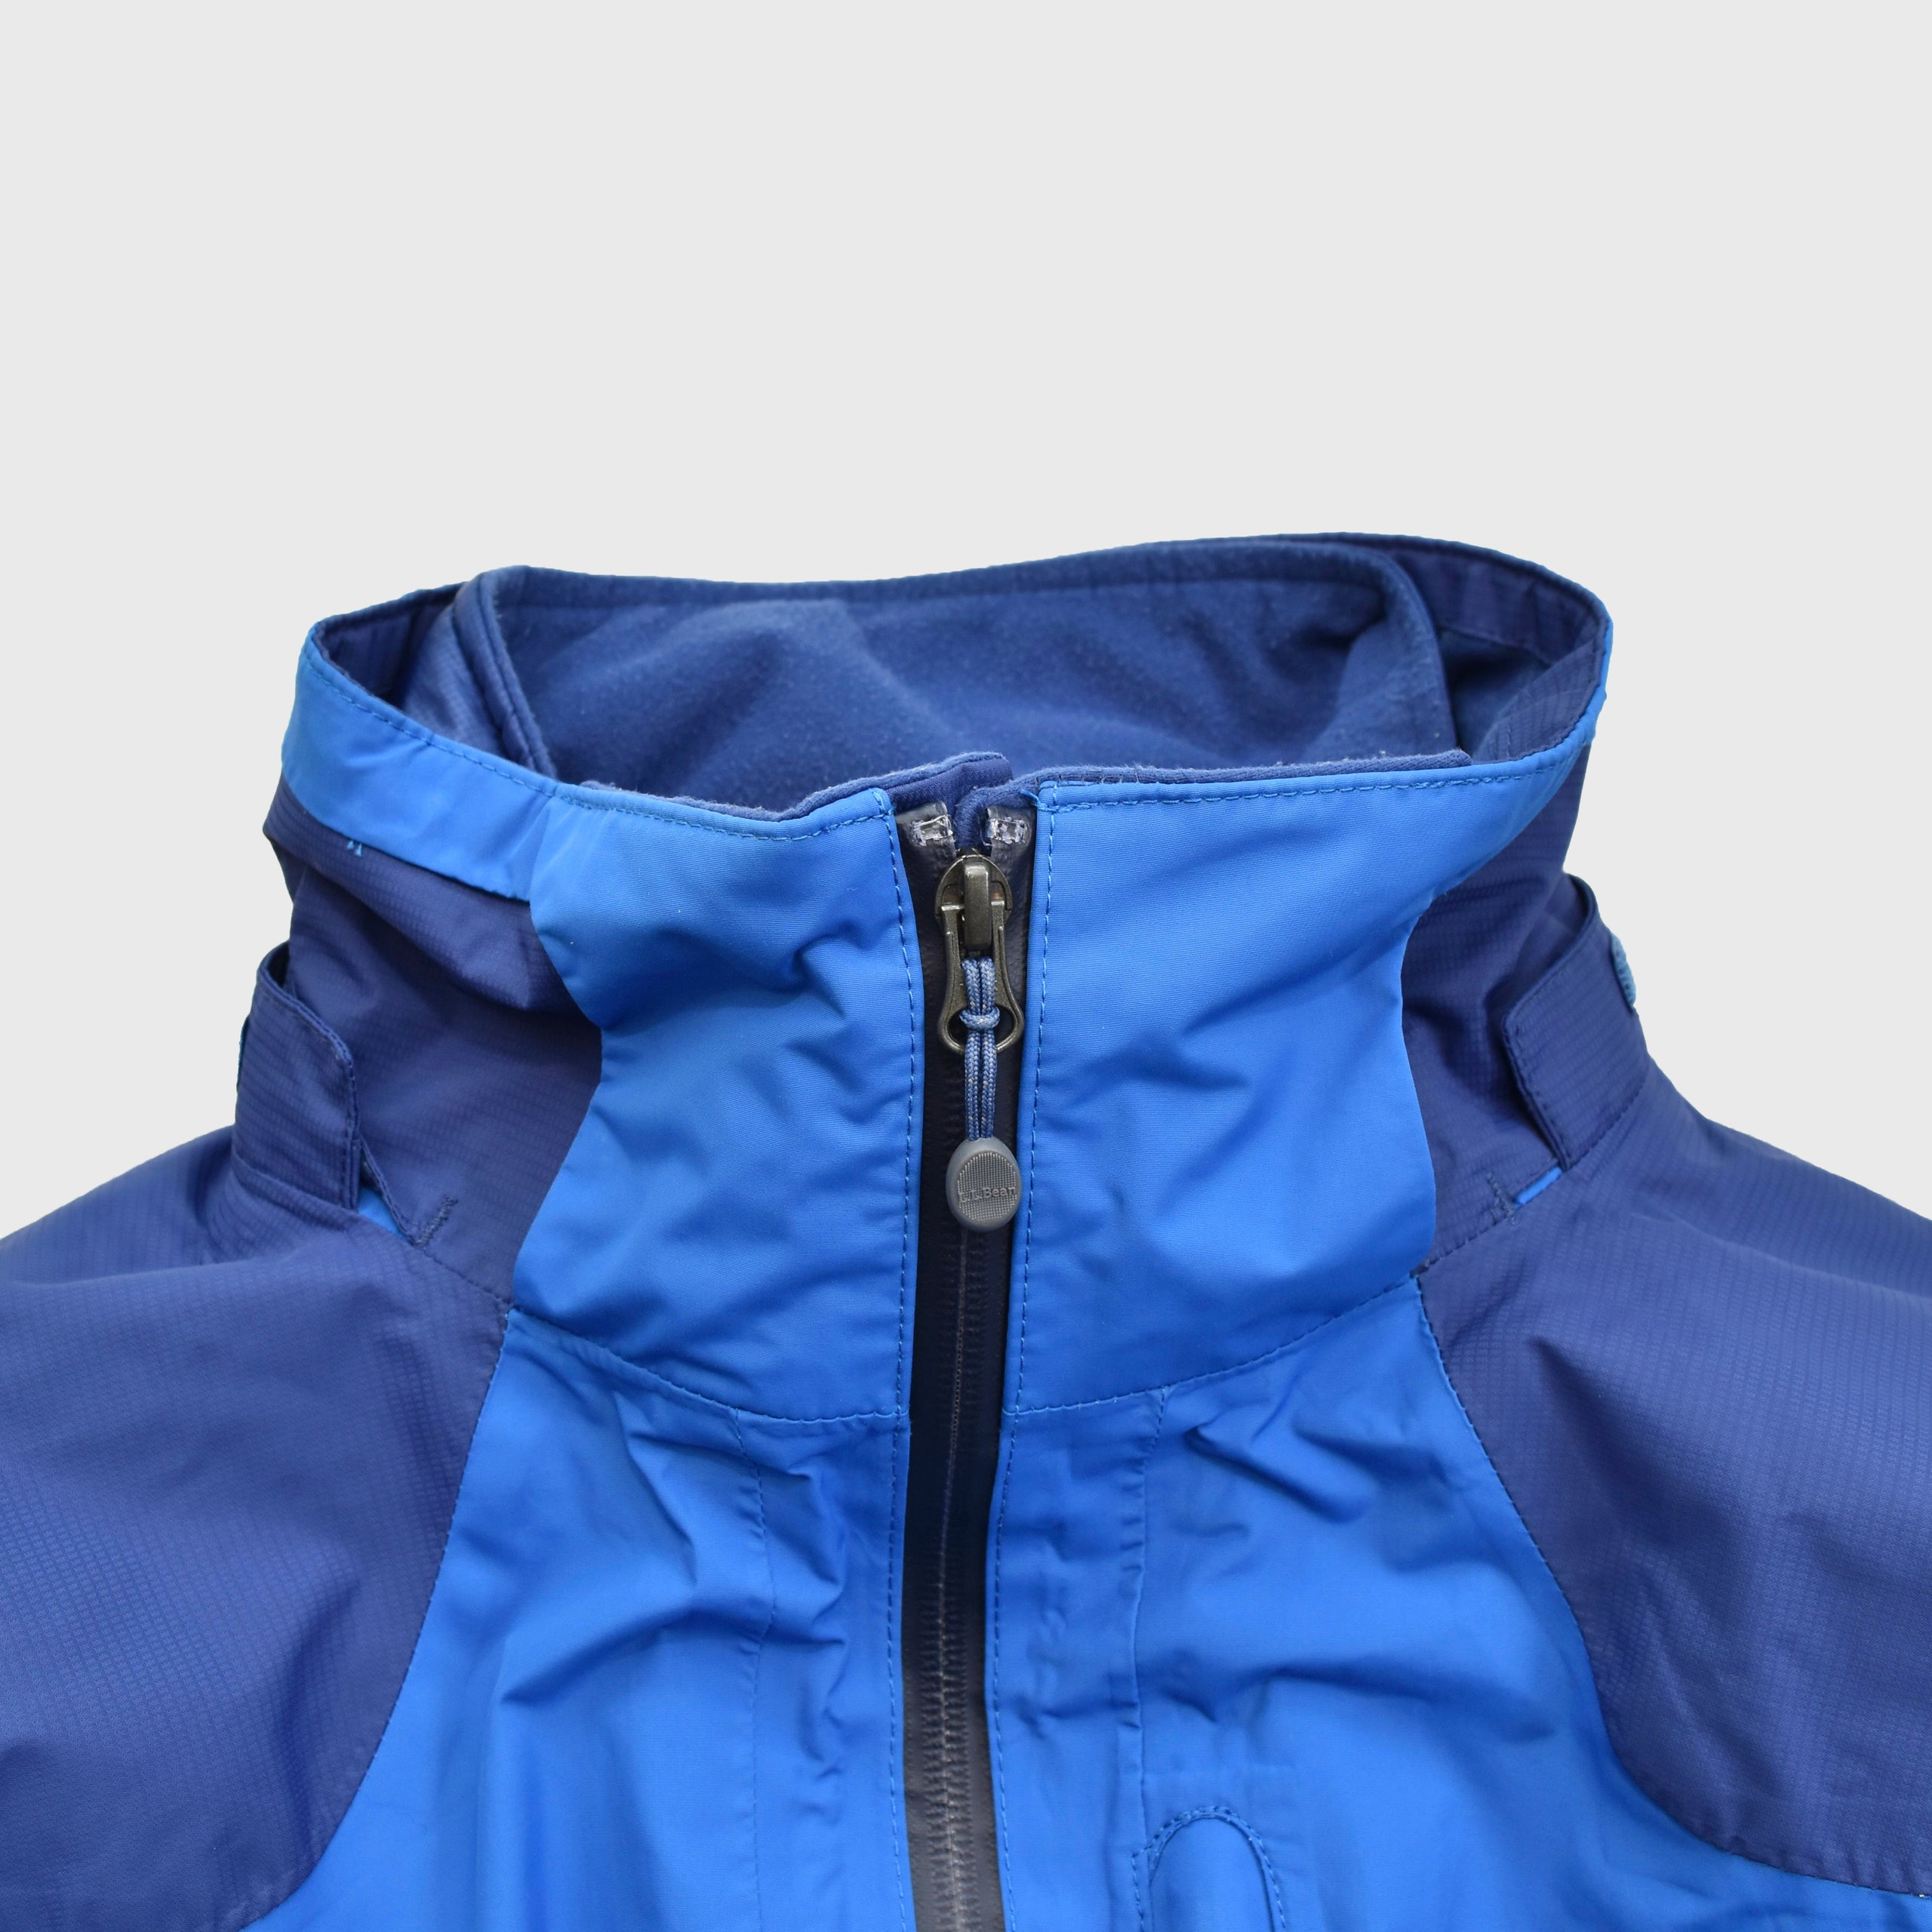 フードは襟に収納可能L.L.Bean Nylon Jacket Detachable Liner